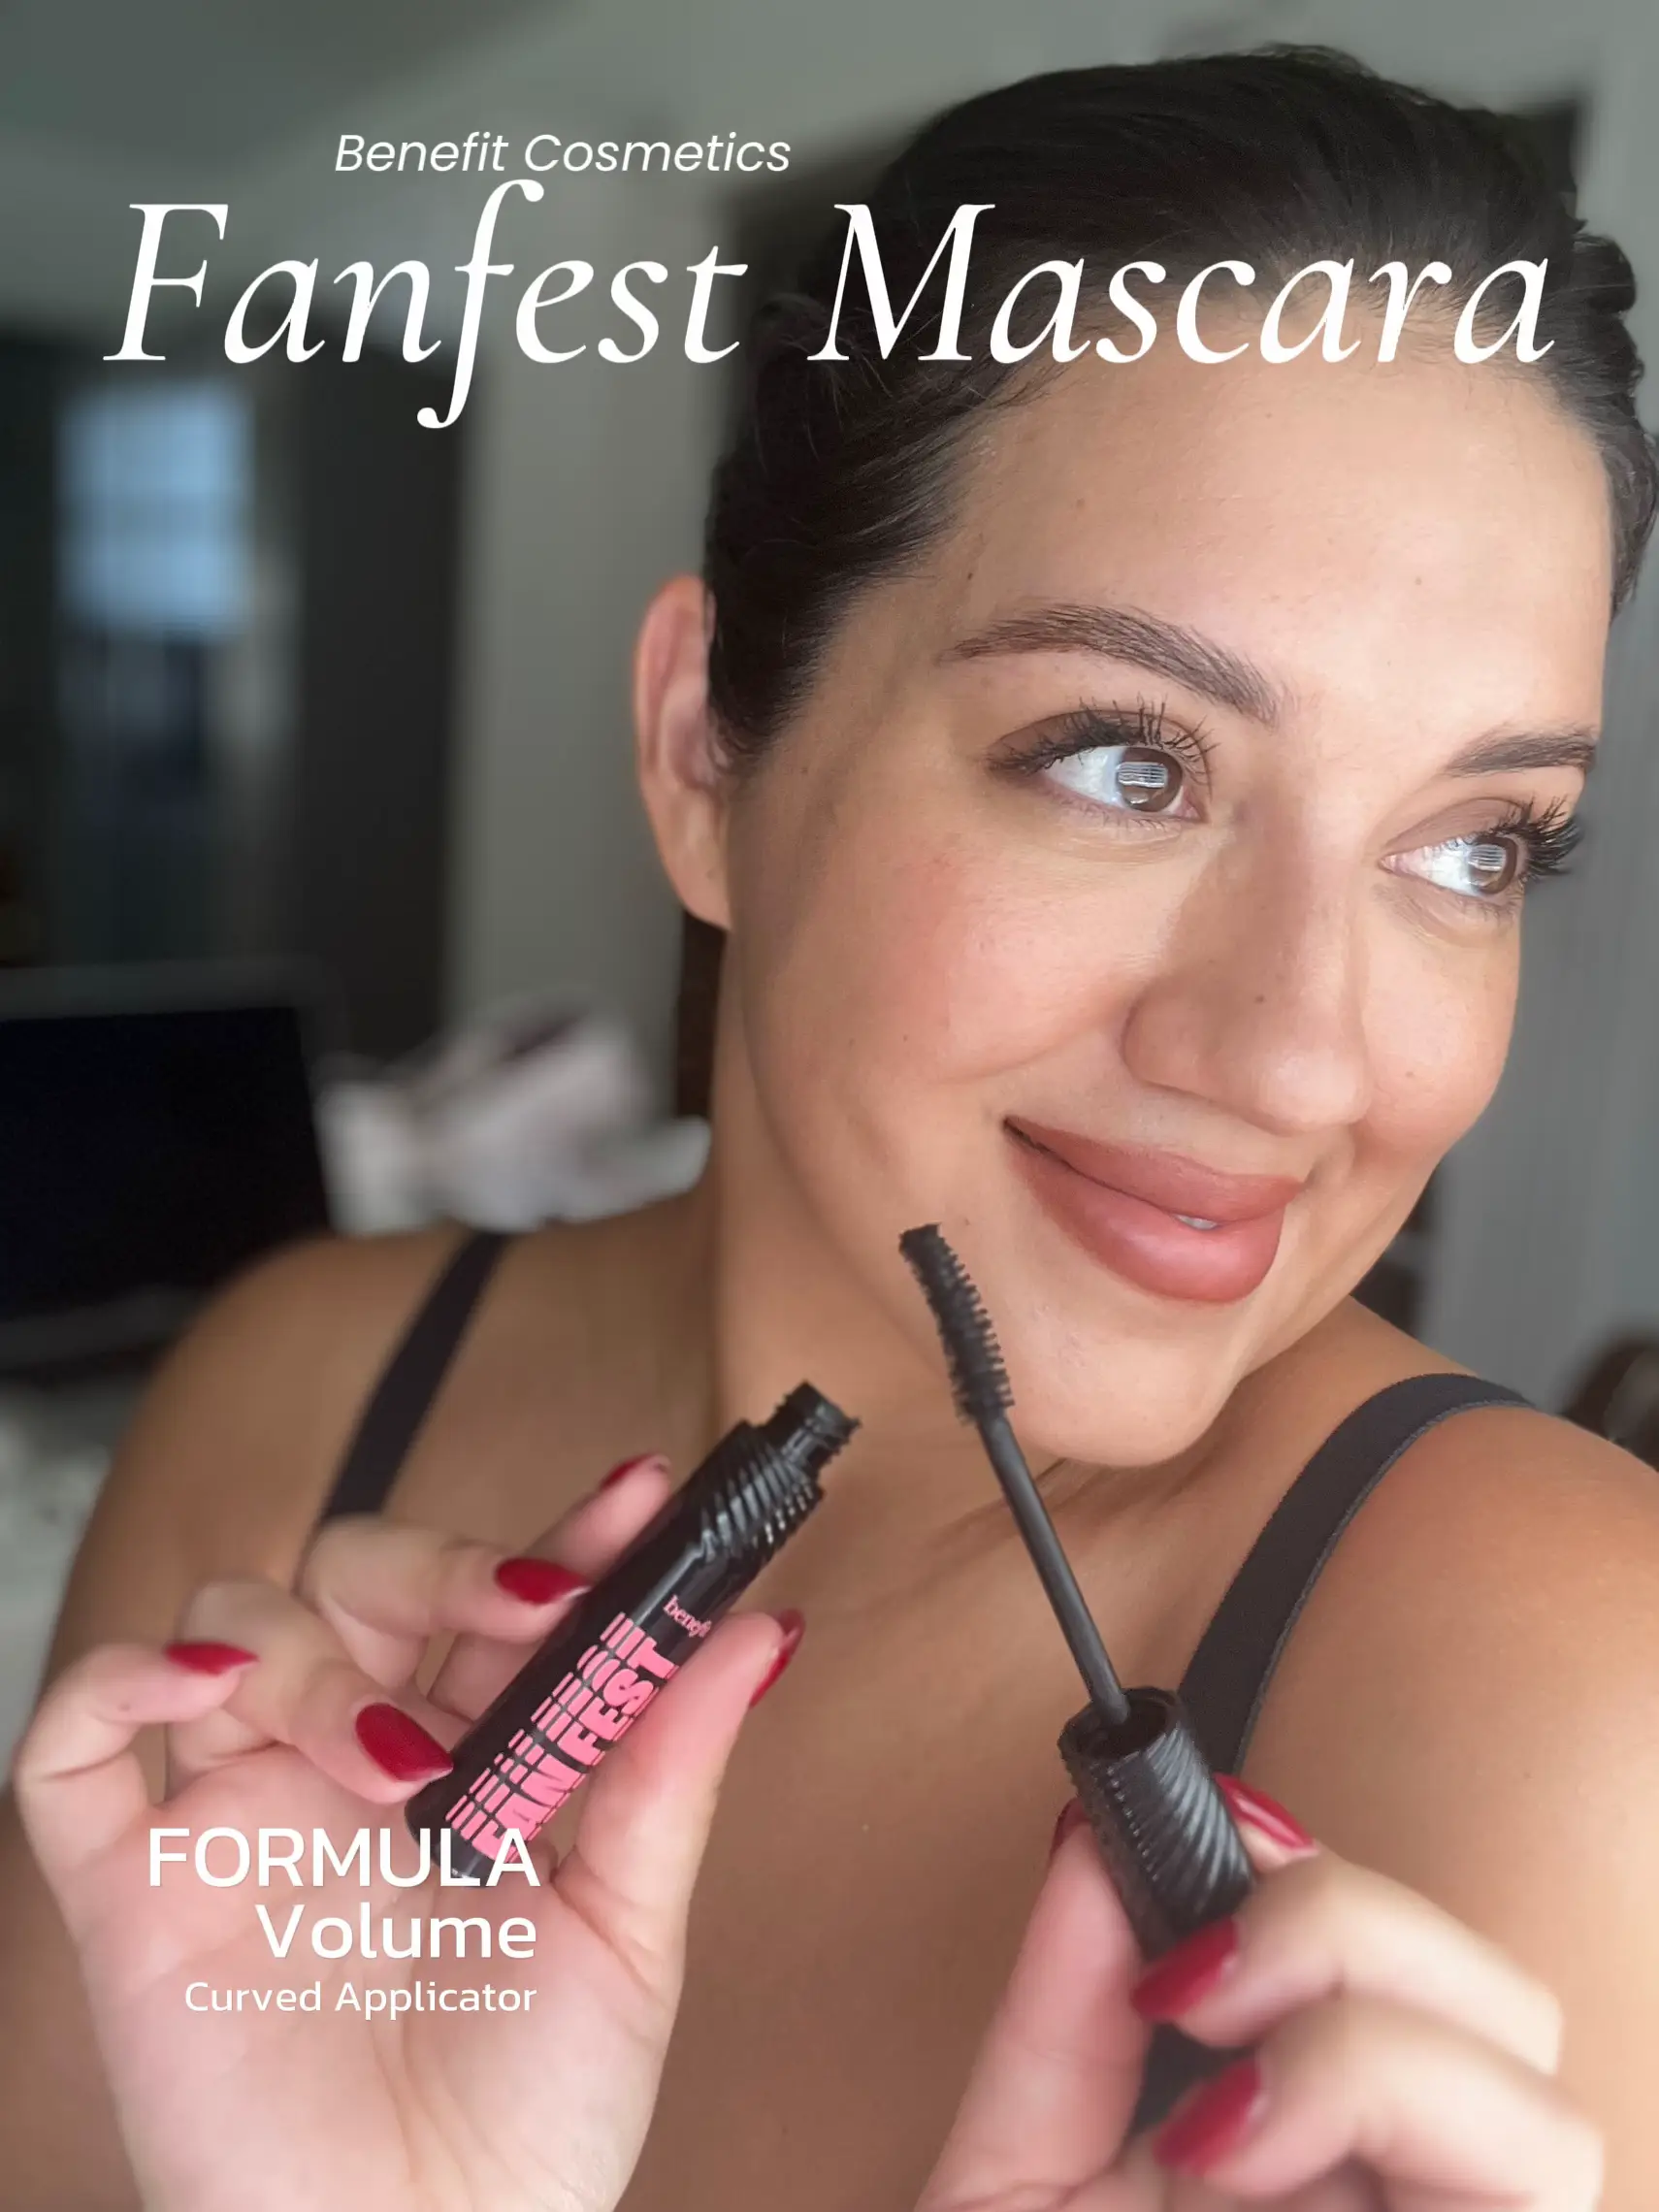 Benefit Cosmetics Fan Fest Mascara